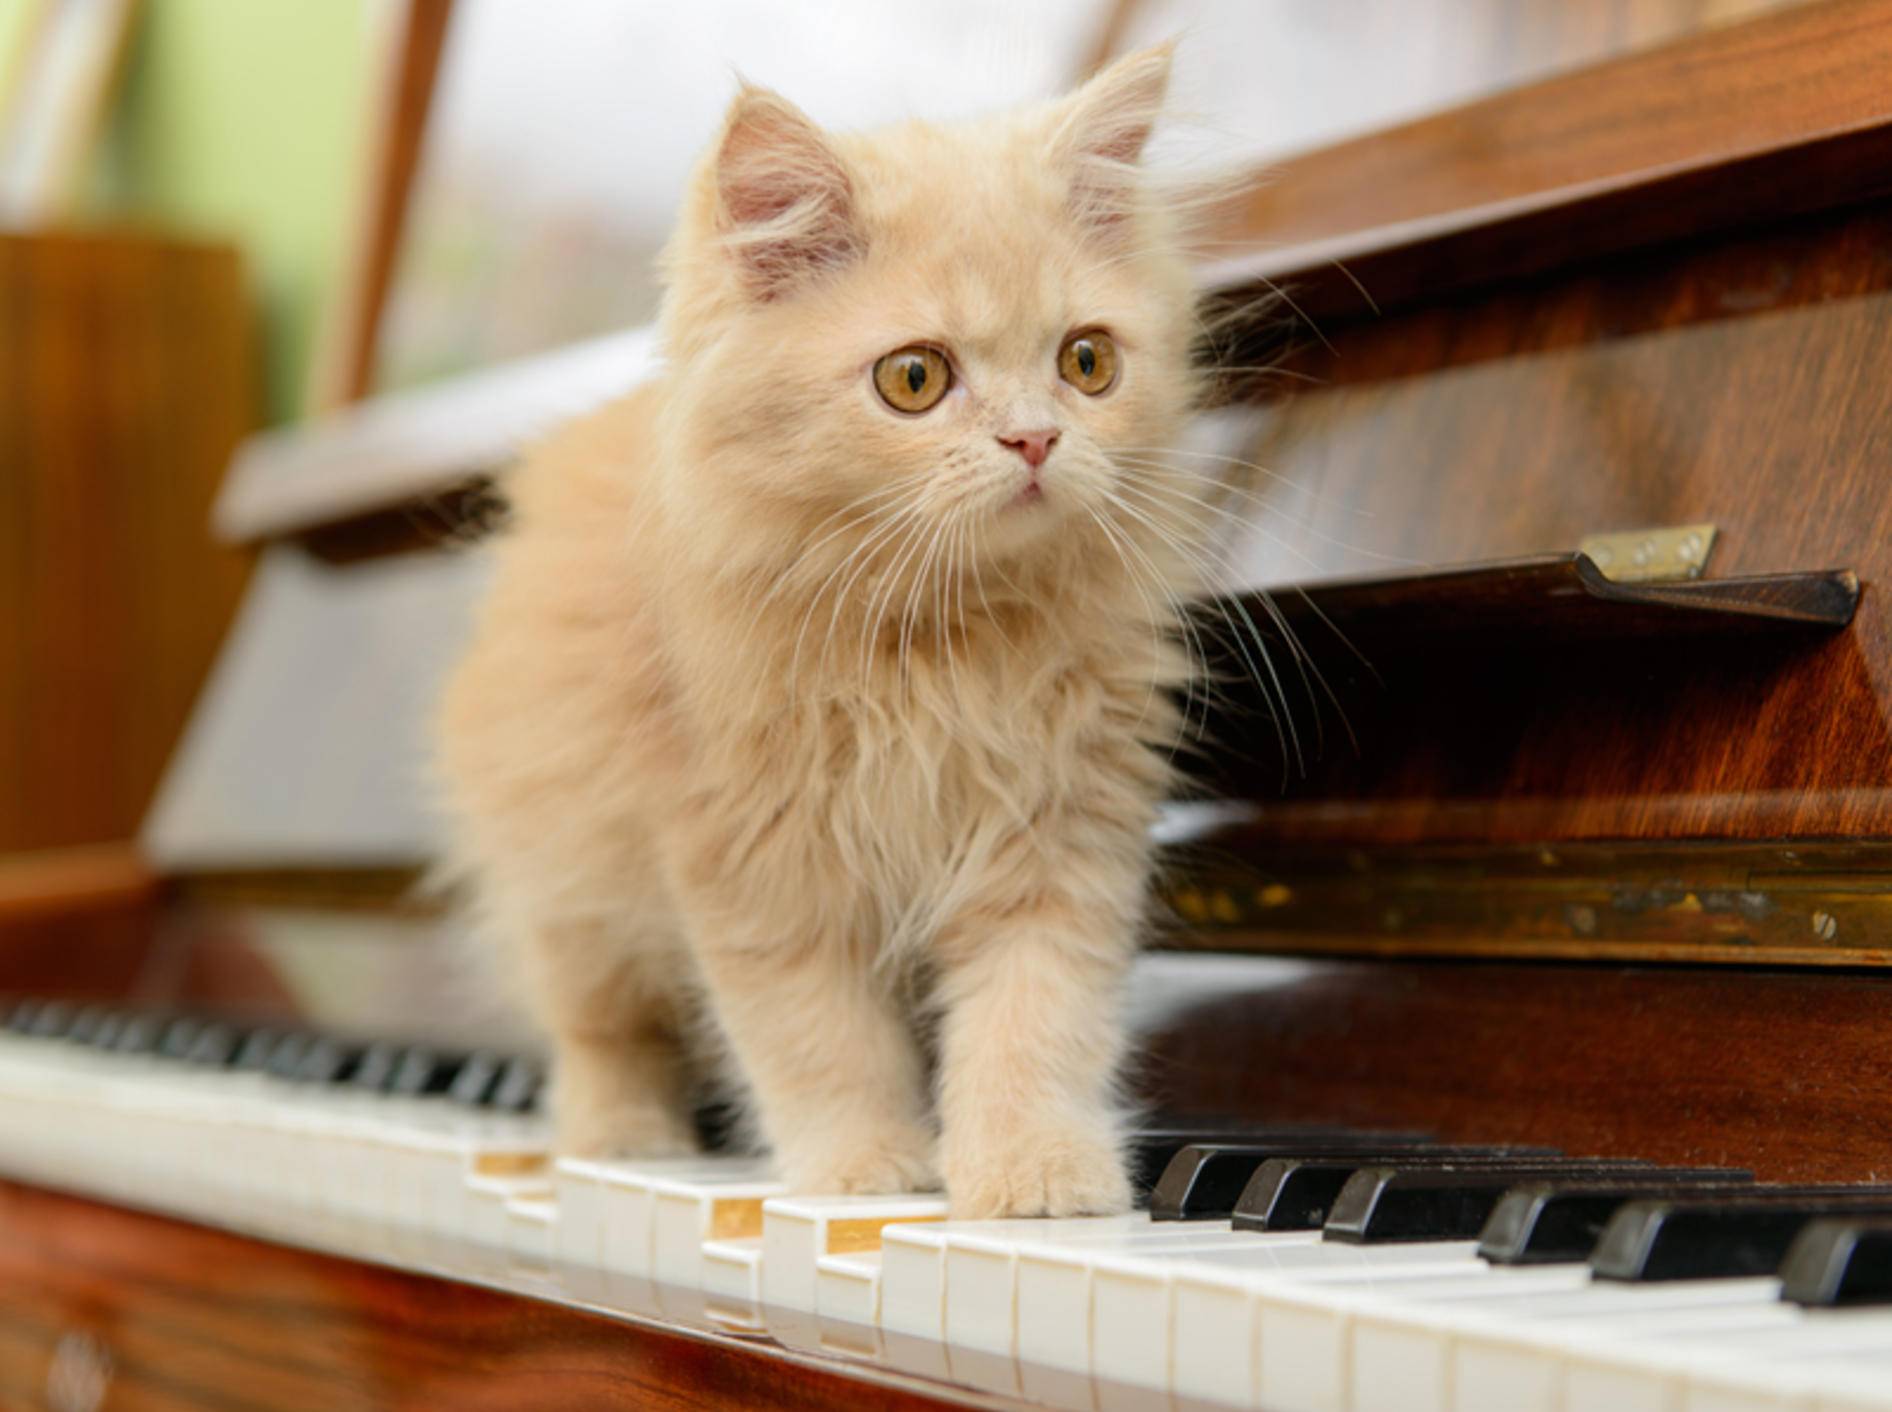 Welche Musik hören Katzen am liebsten? Diese Minimiez mag wohl am liebsten Klavierklänge – Shutterstock / Inna Astakhova